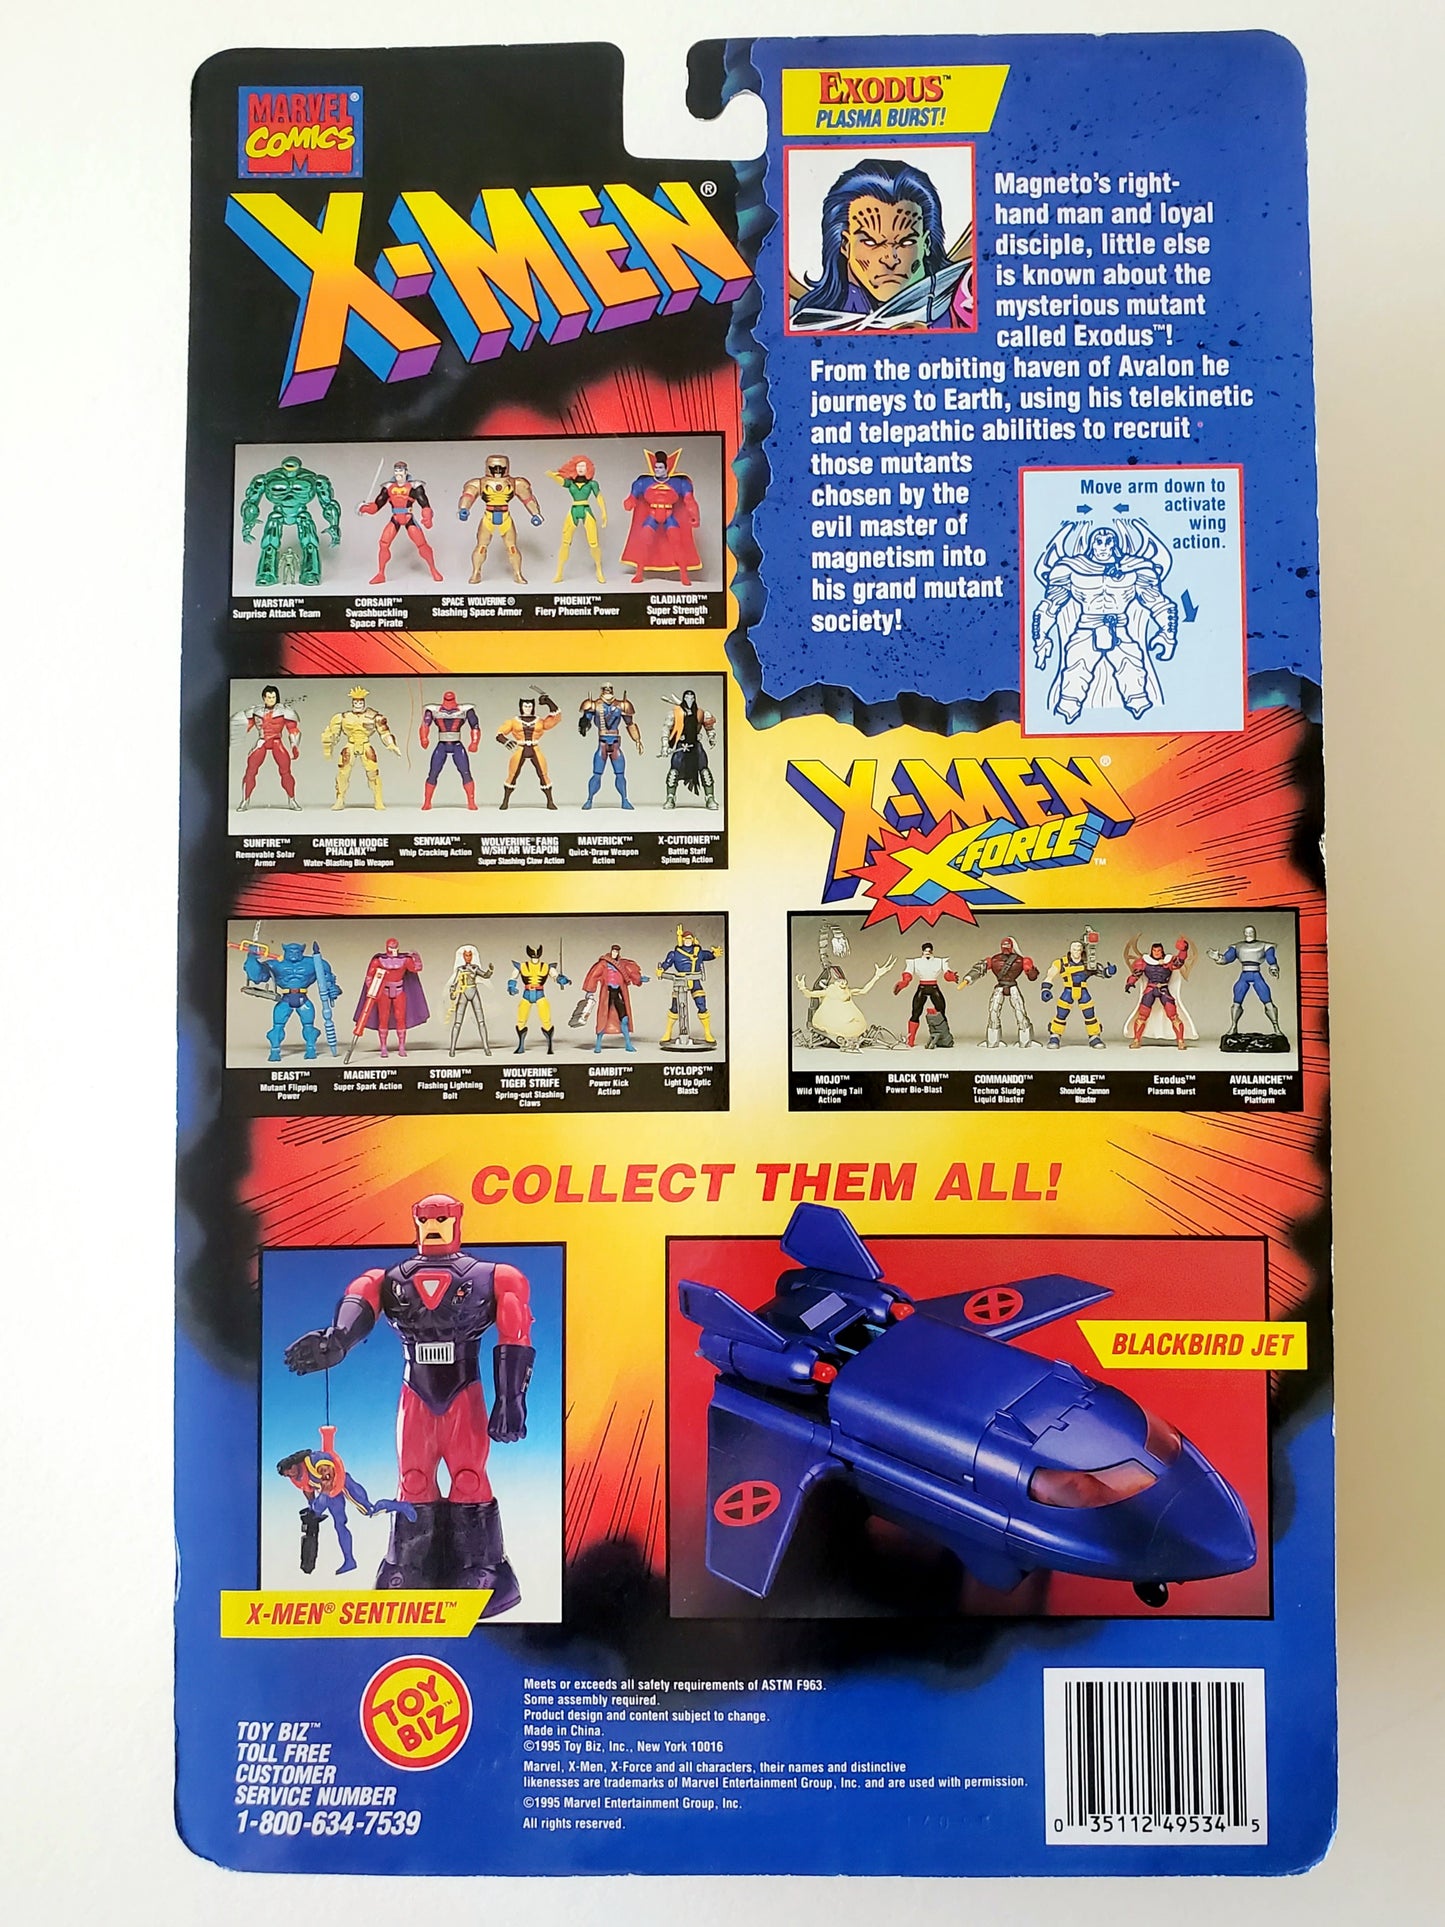 X-Men/X-Force Exodus Action Figure